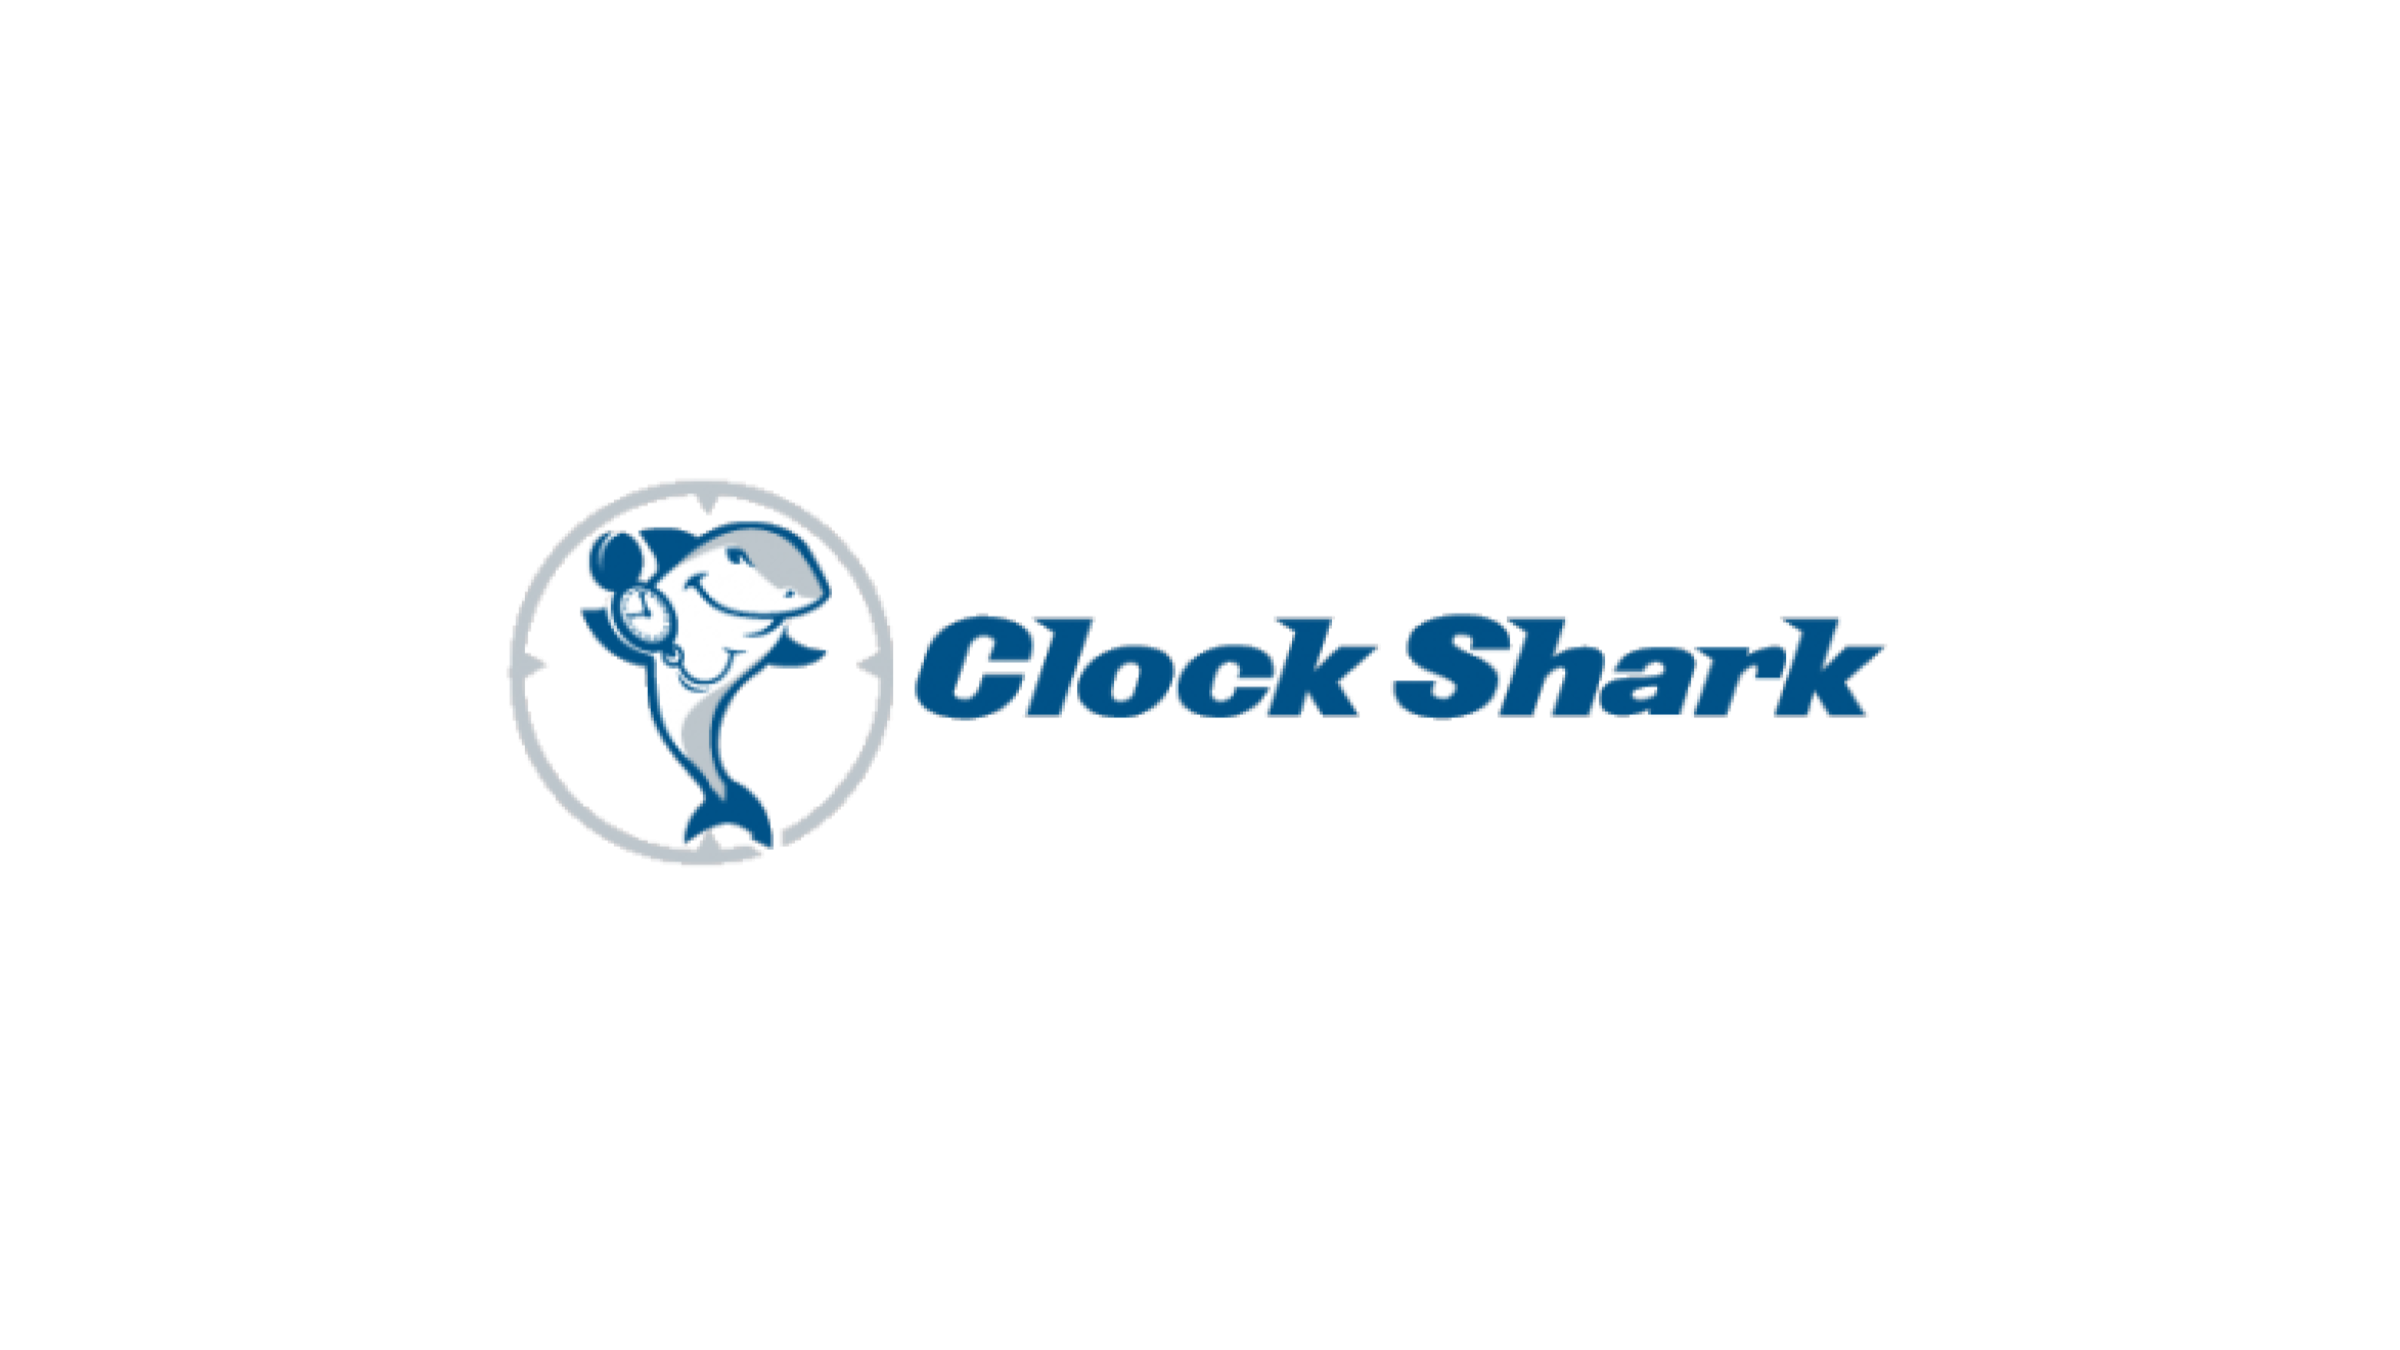 ClockShark Logo